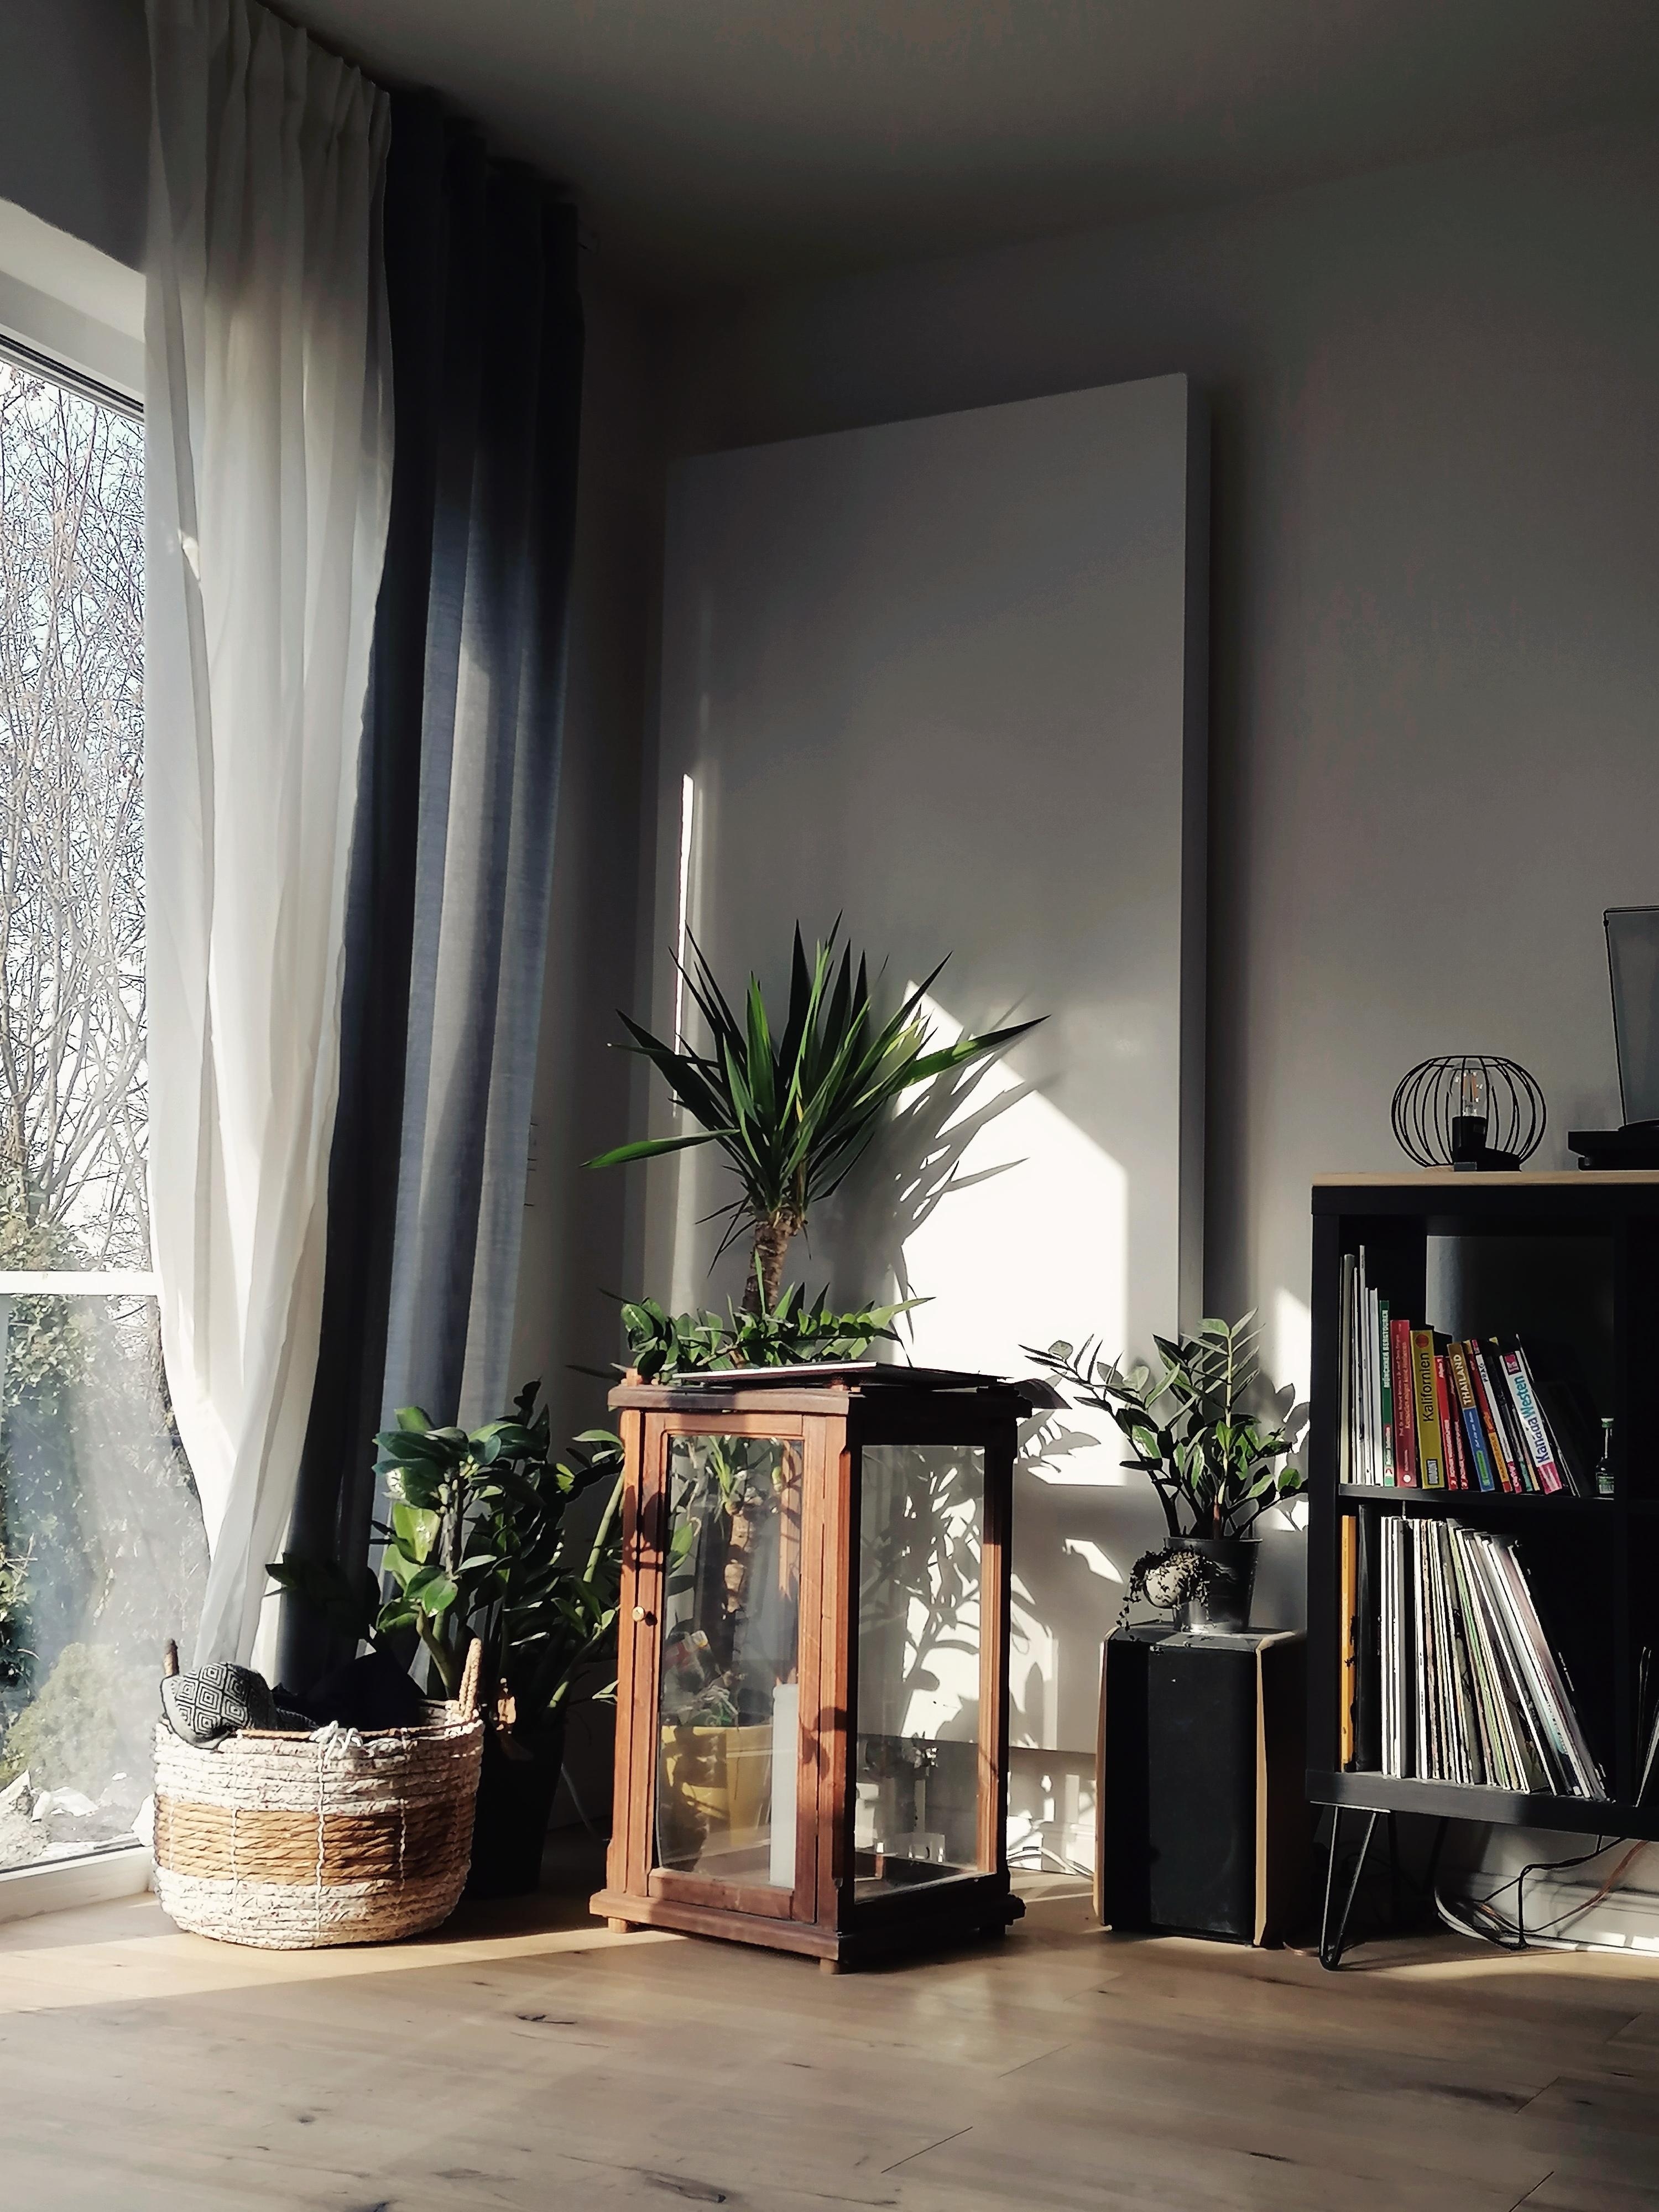 Sonne für die Plant Gang #Wohnzimmer #Pflanzen #Frühlingsgefühle #Sonne